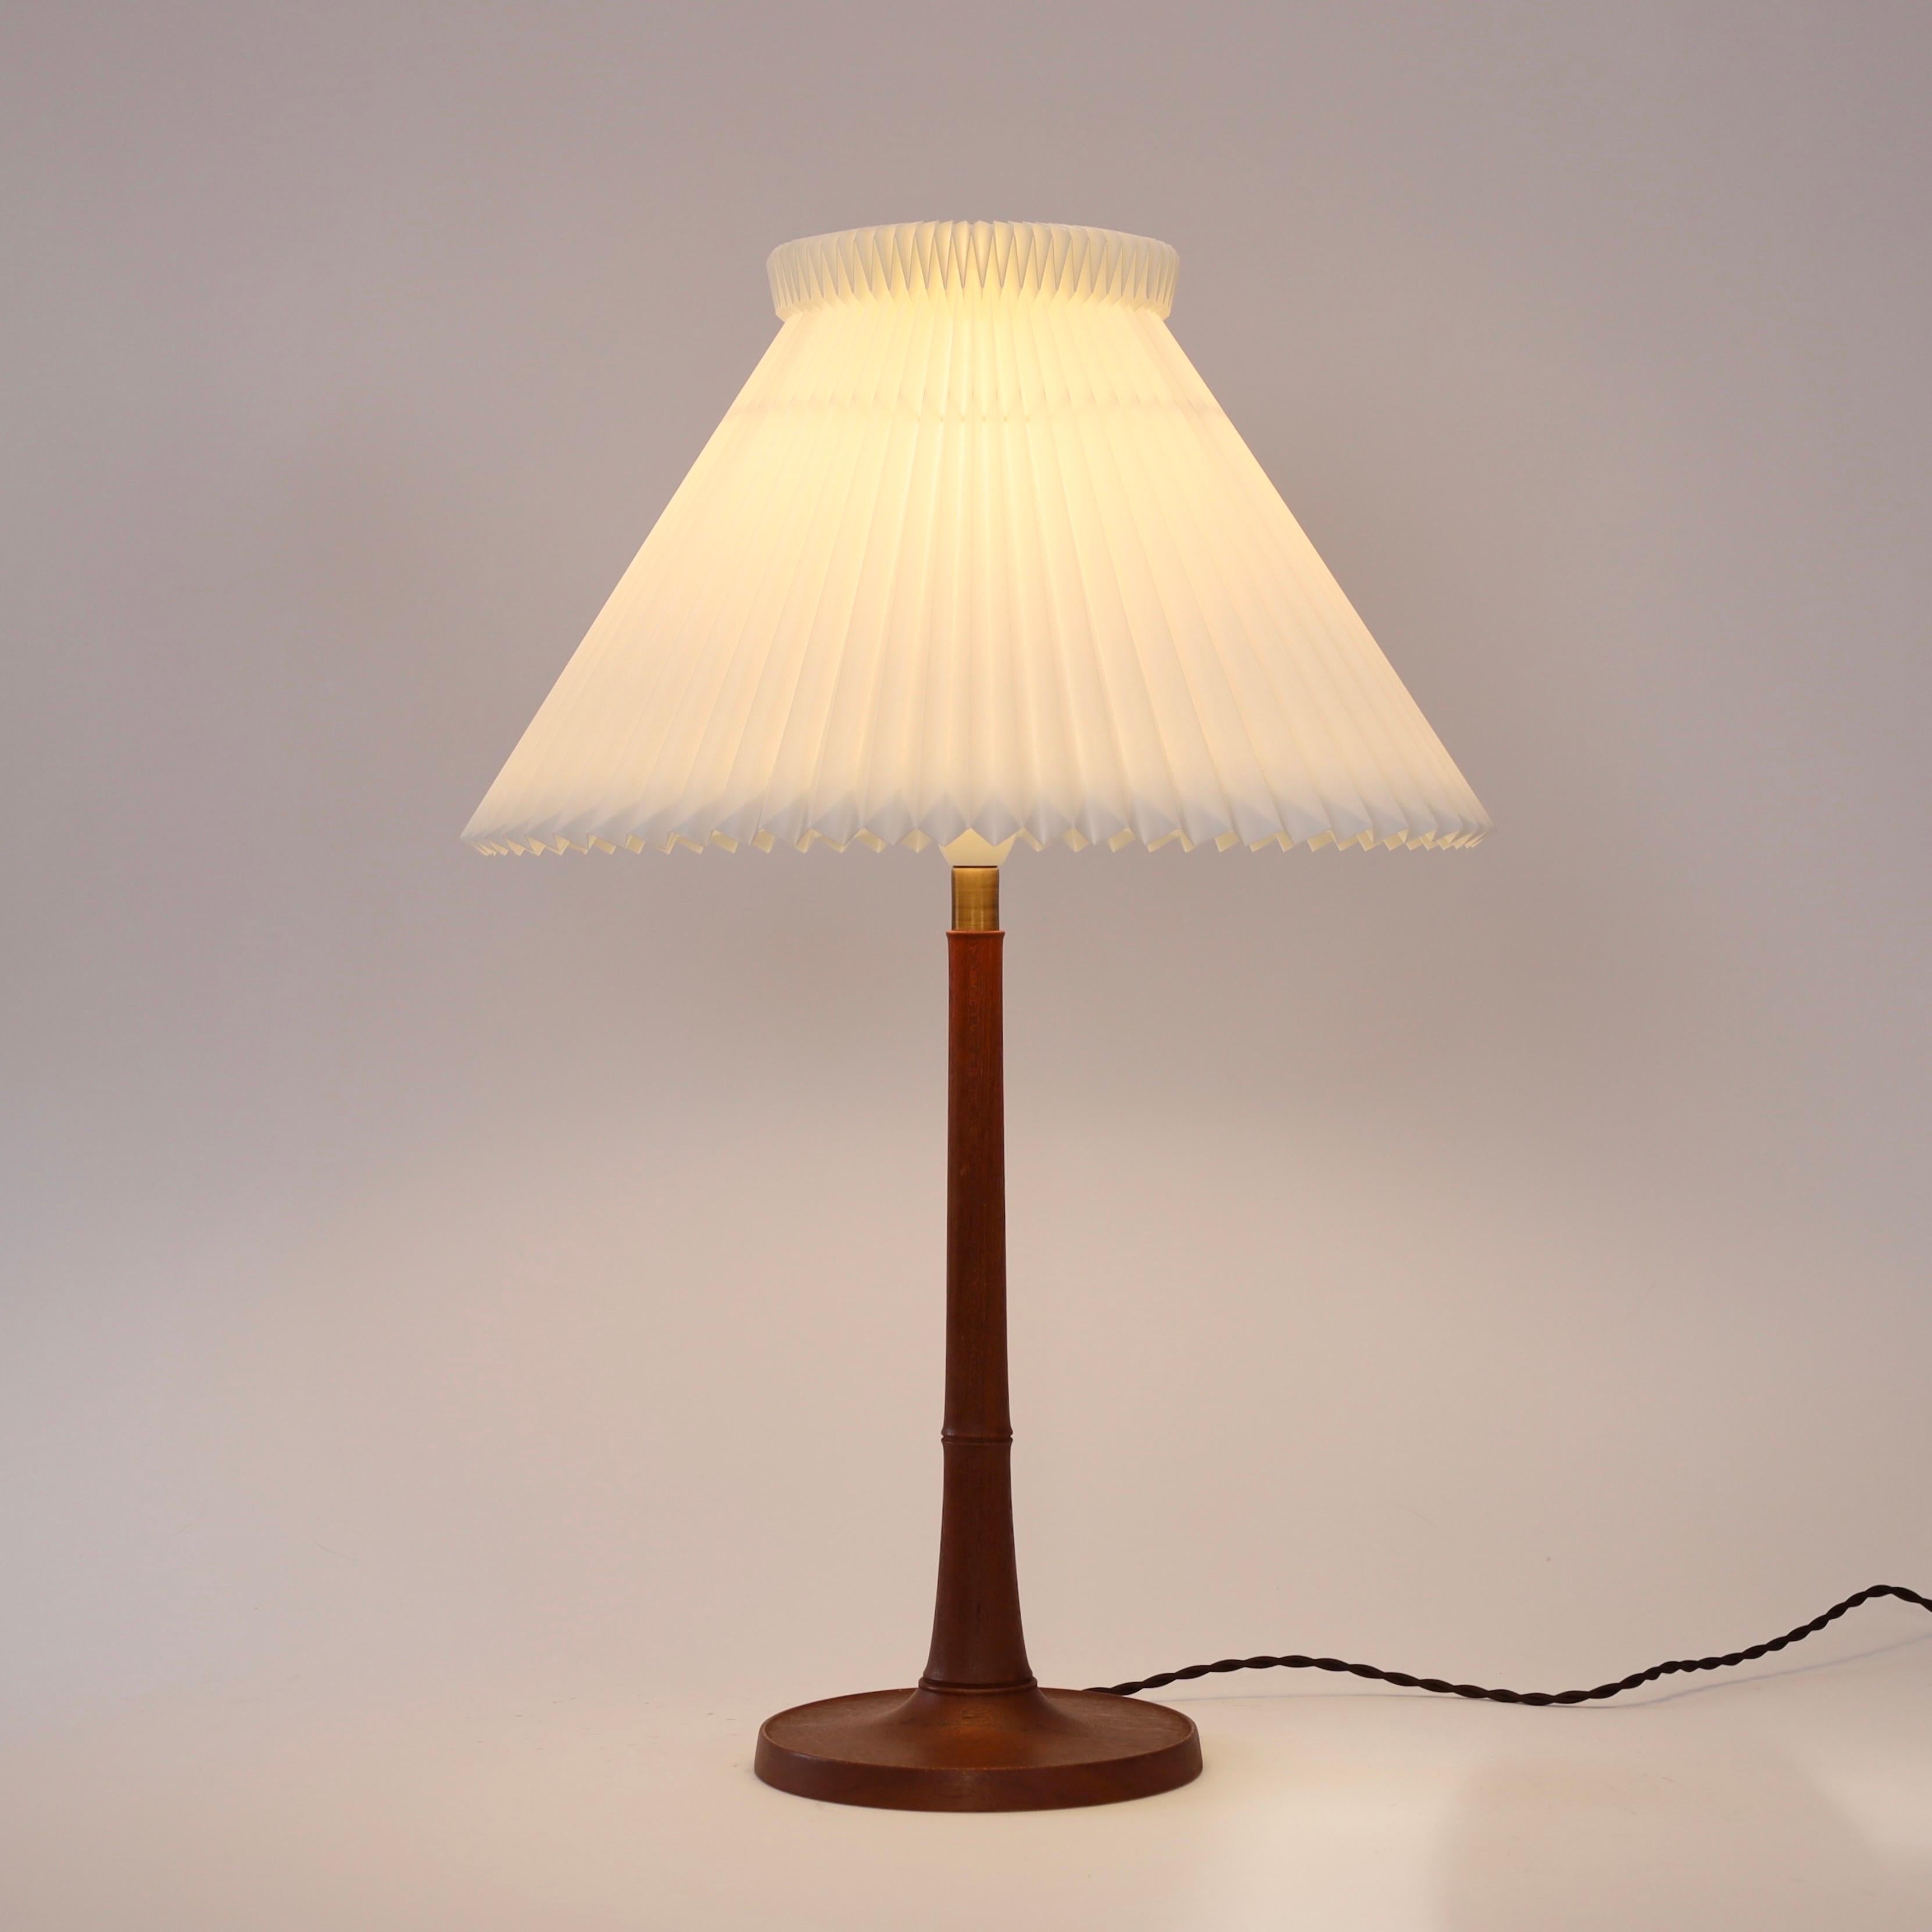 Danish Modern Le Klint oak wood table lamp, 1950s, Denmark For Sale 2